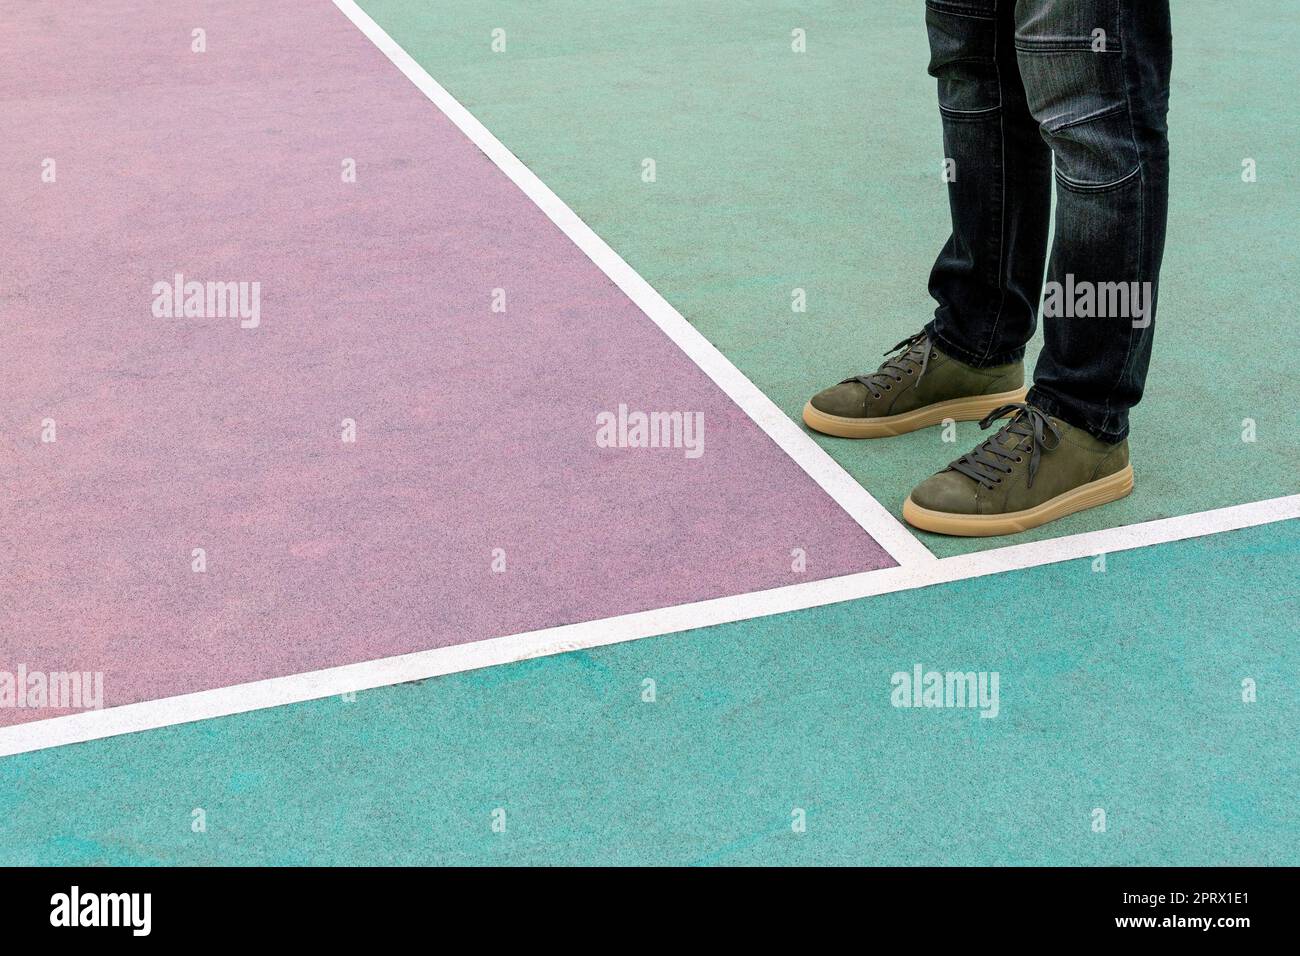 Les pieds hommes se trouvent sur le terrain de jeu en caoutchouc peint dans des couleurs pastel Banque D'Images